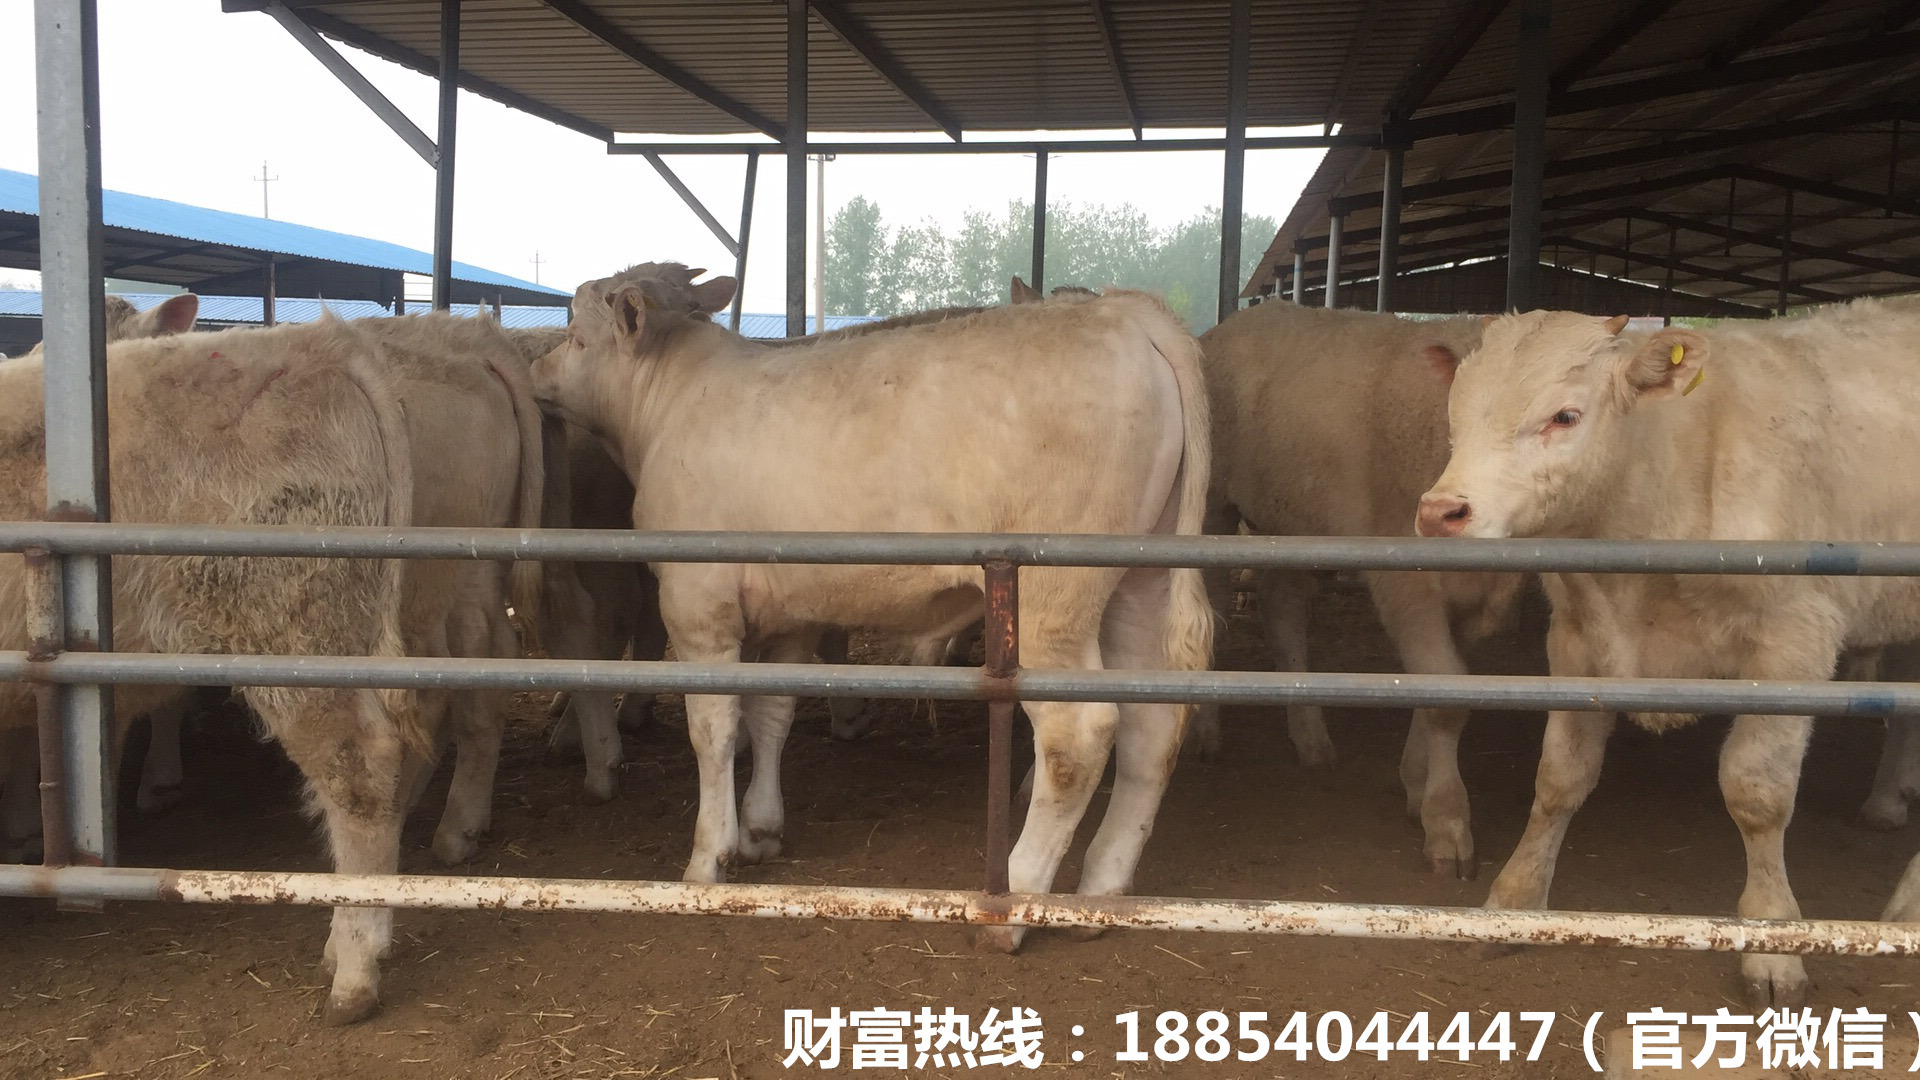 批发出售夏洛莱牛 夏洛莱肉牛的价格 大型肉牛养殖场示例图9